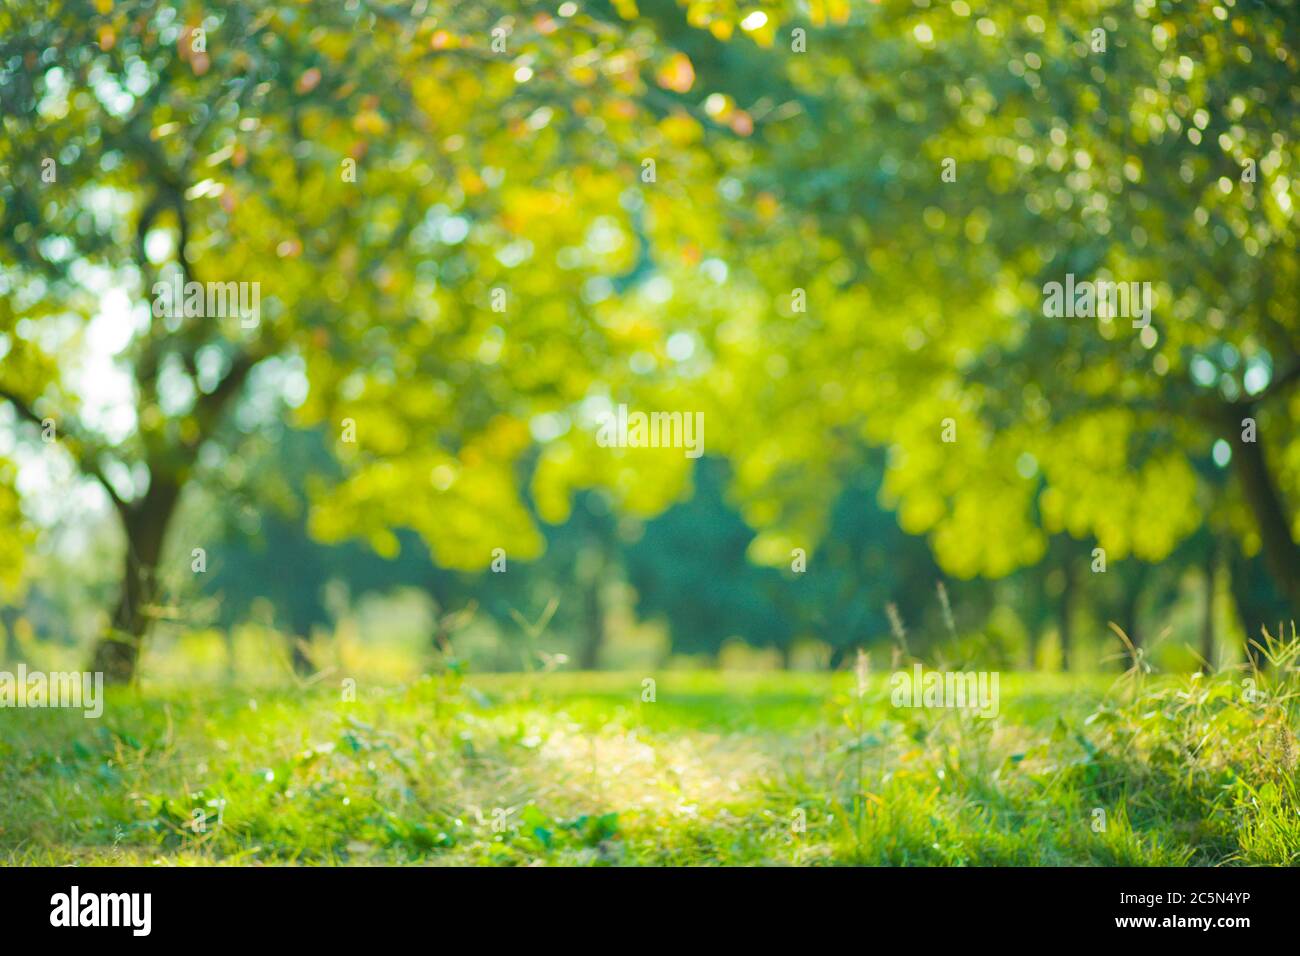 Blur Green Background: Với màu xanh lá cây nhẹ nhàng và tâm hồn bình yên của nó, Blur Green Background sẽ là lựa chọn hoàn hảo cho bất kỳ hình ảnh nào của bạn. Hãy nhấn vào hình ảnh liên quan để tìm hiểu cách tạo ra nền tảng xanh mịn màng và hoàn hảo cho bức ảnh của bạn ngay bây giờ! 